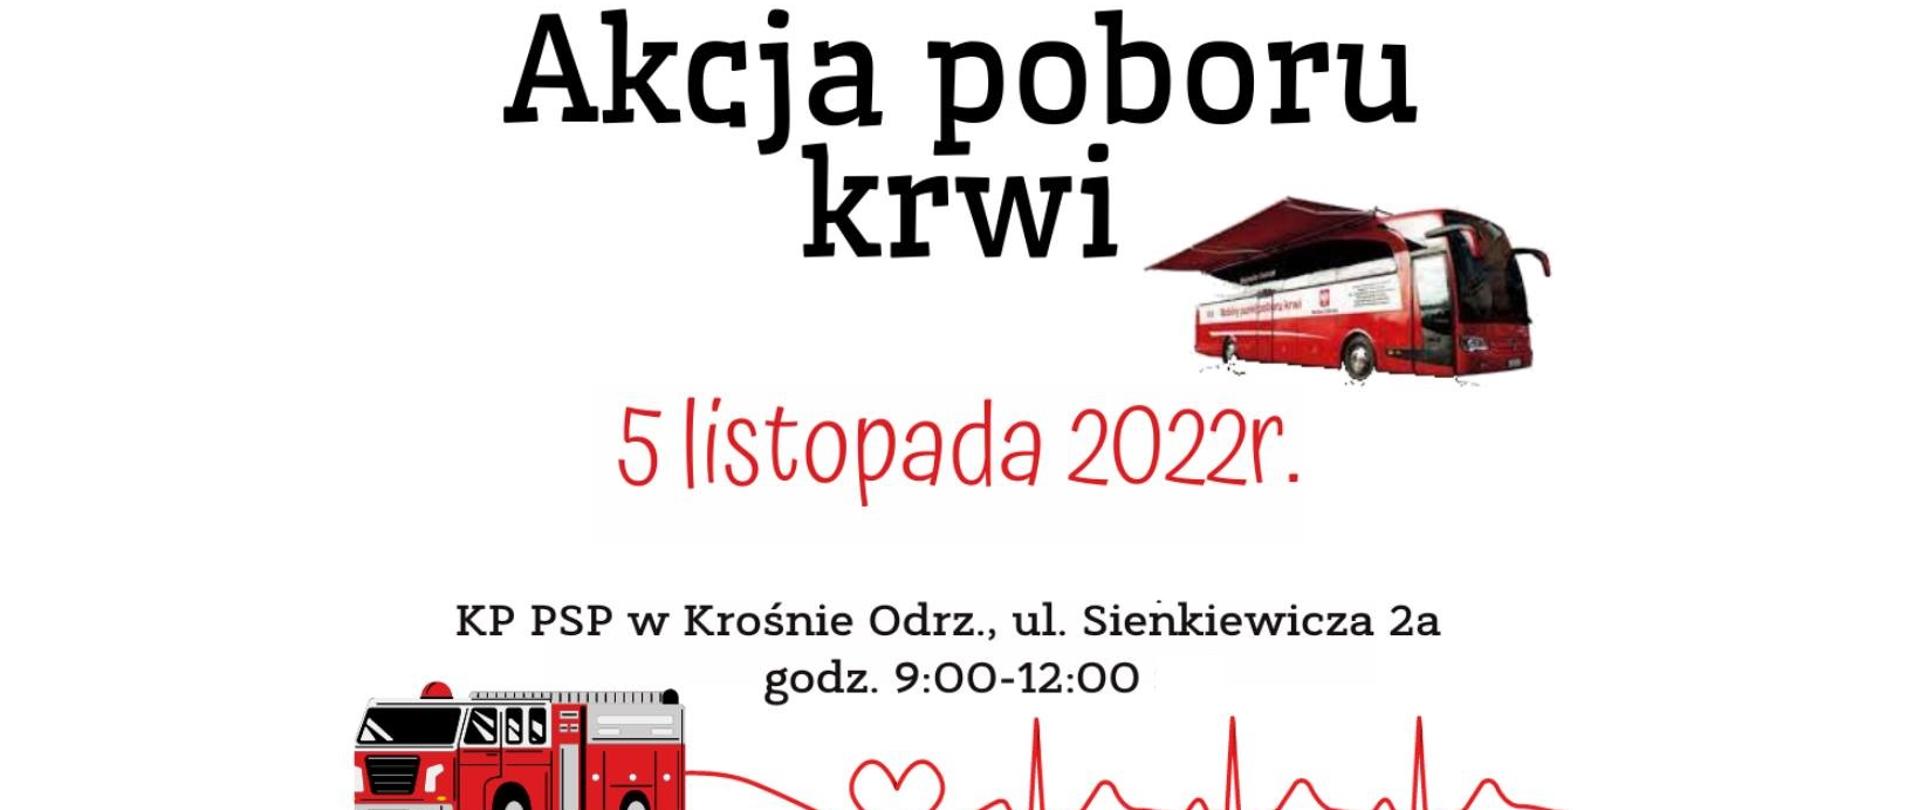 Zdjęcie przedstawia plakat pn. Akcja Poboru Krwi. Widnieje na nim data - 5.11.2022 i miejsce - KP PSP Krosno Odrz.